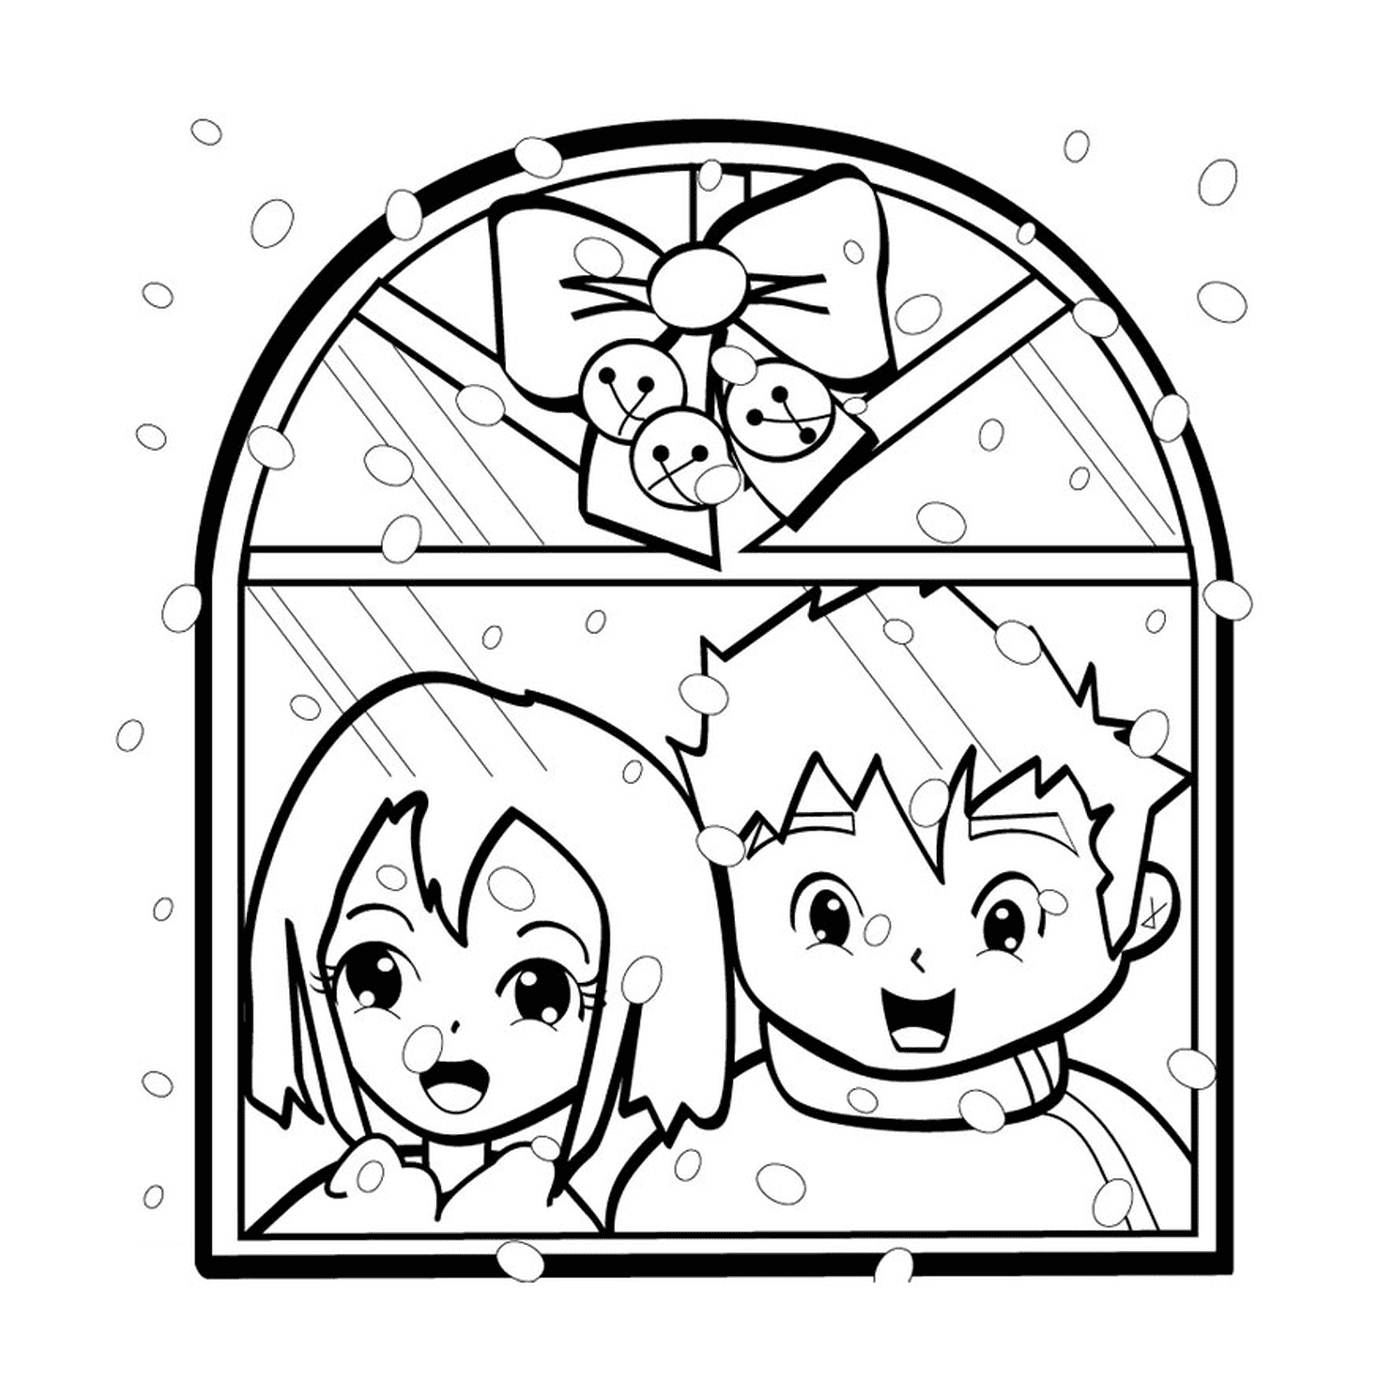  bambini davanti alla finestra 